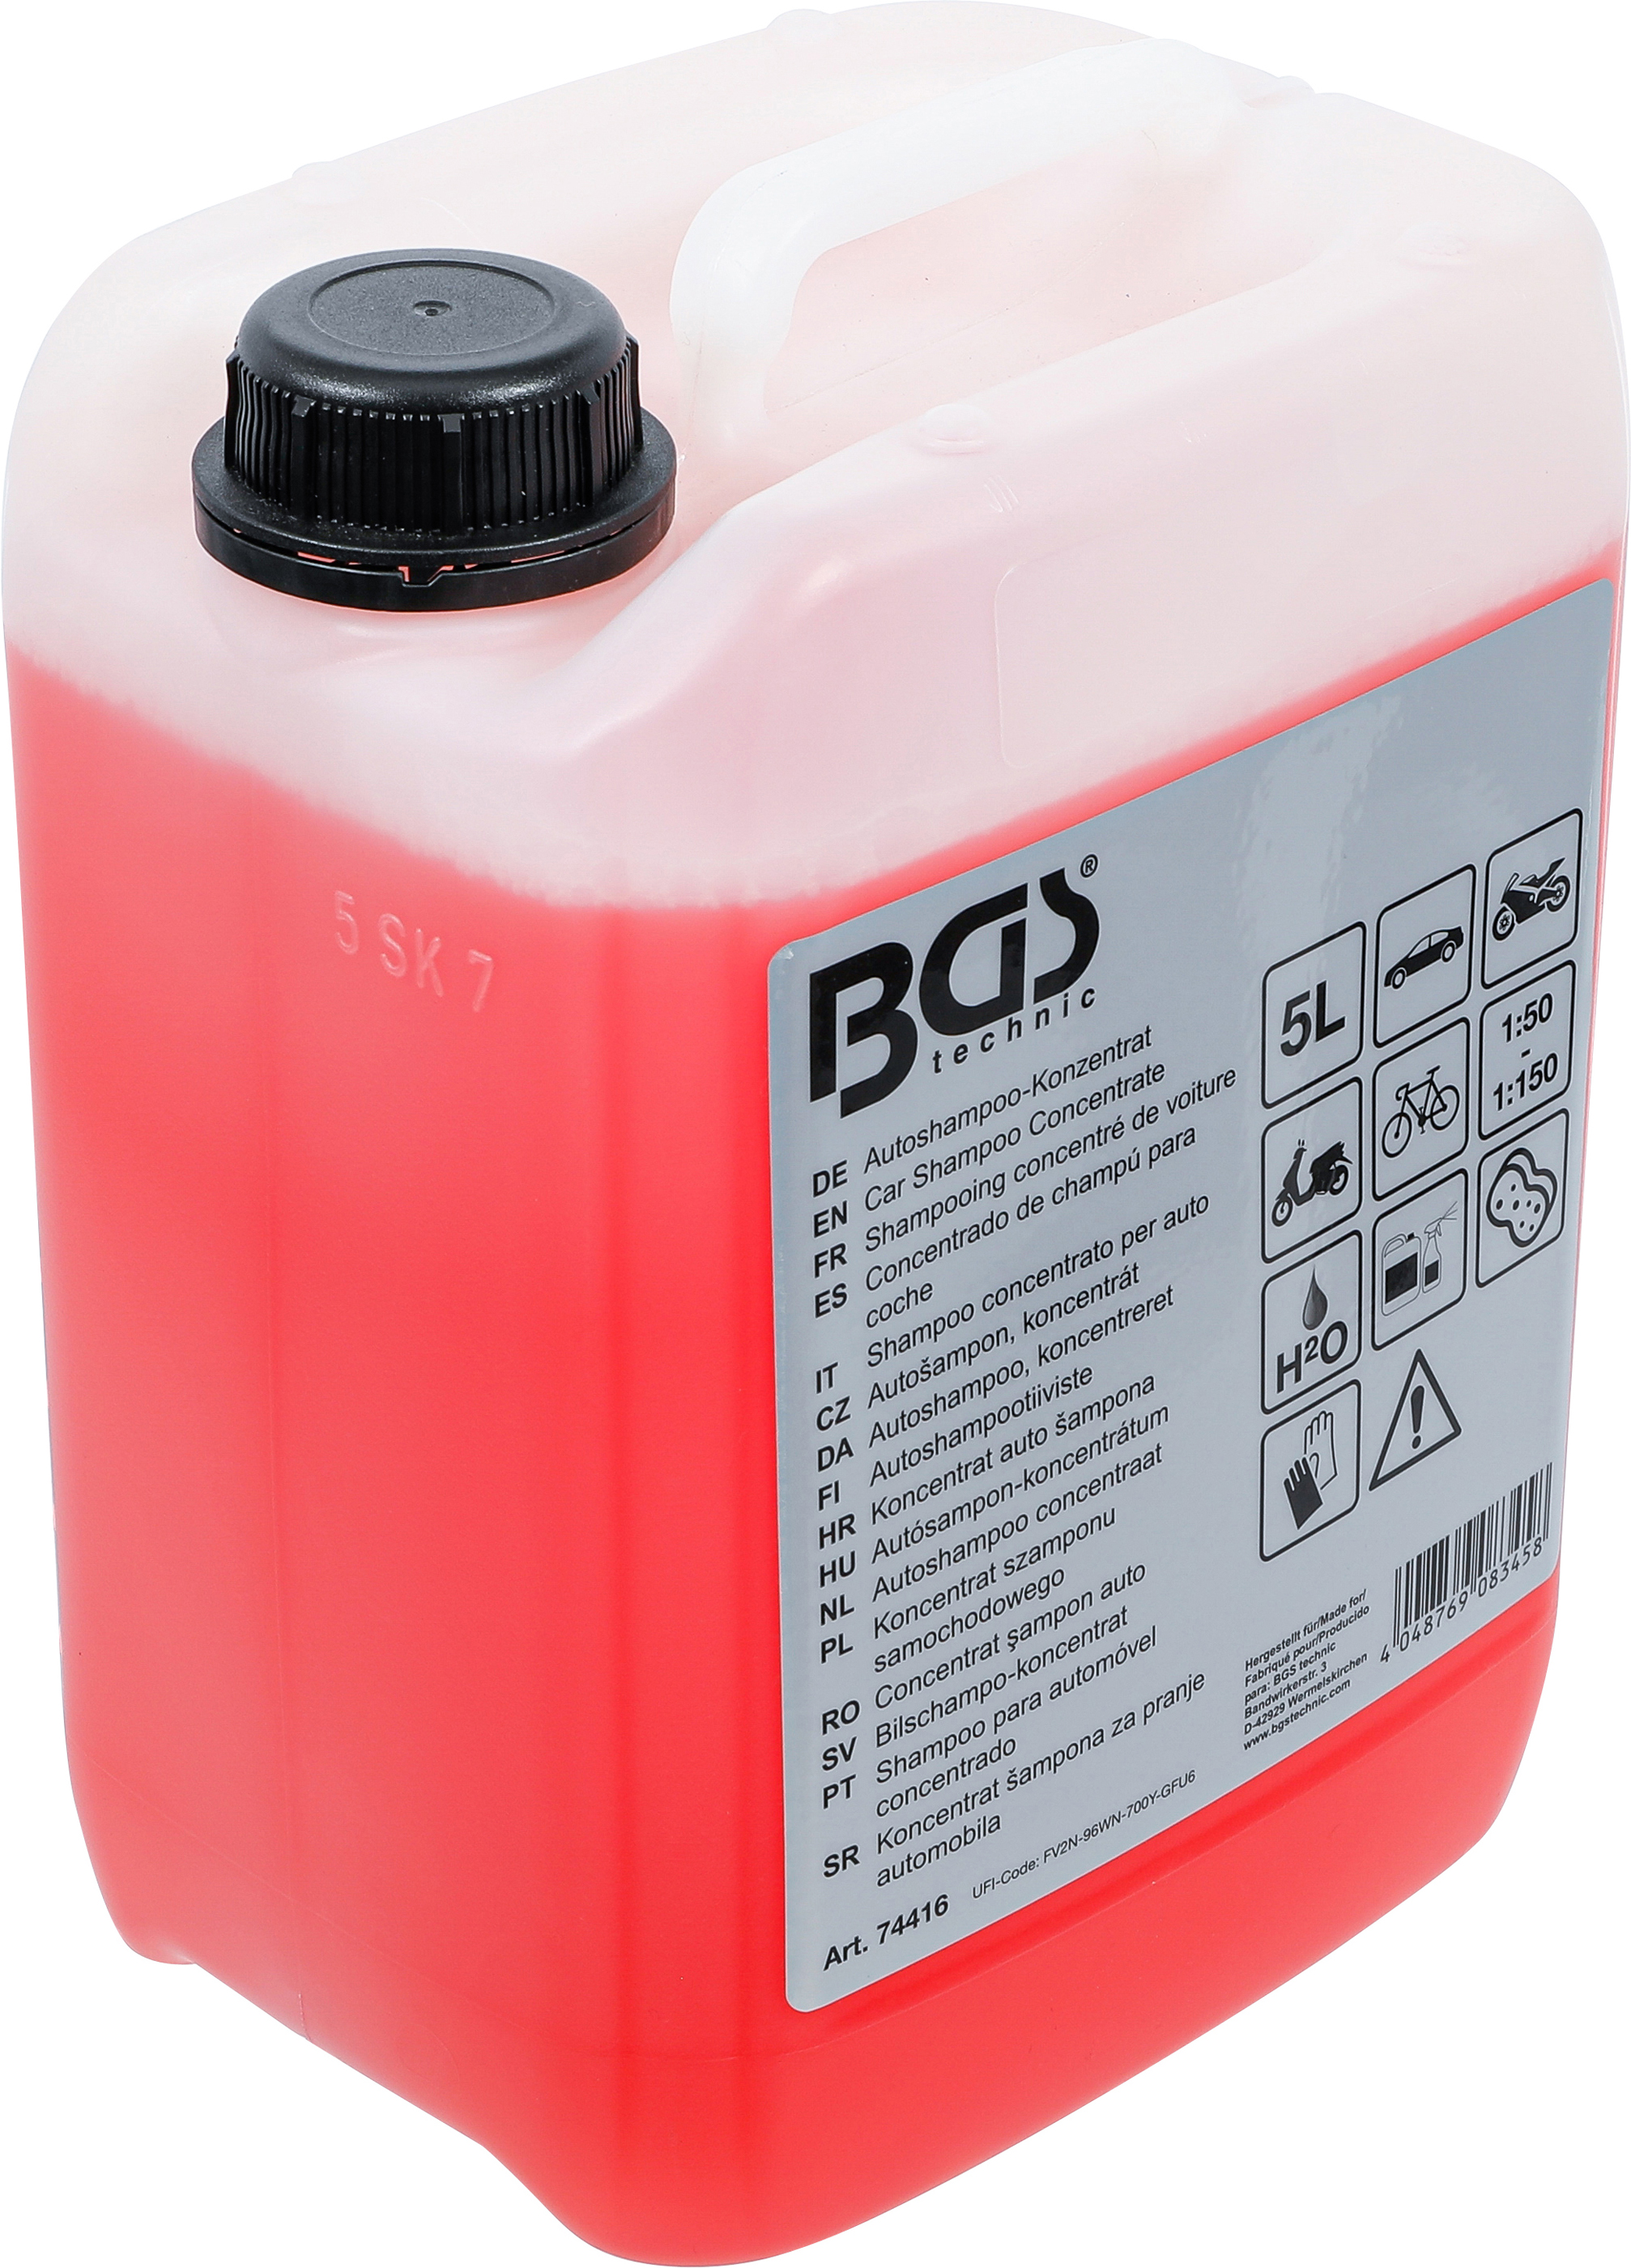 BGS 74416 Concentrat şampon auto,  5 litri